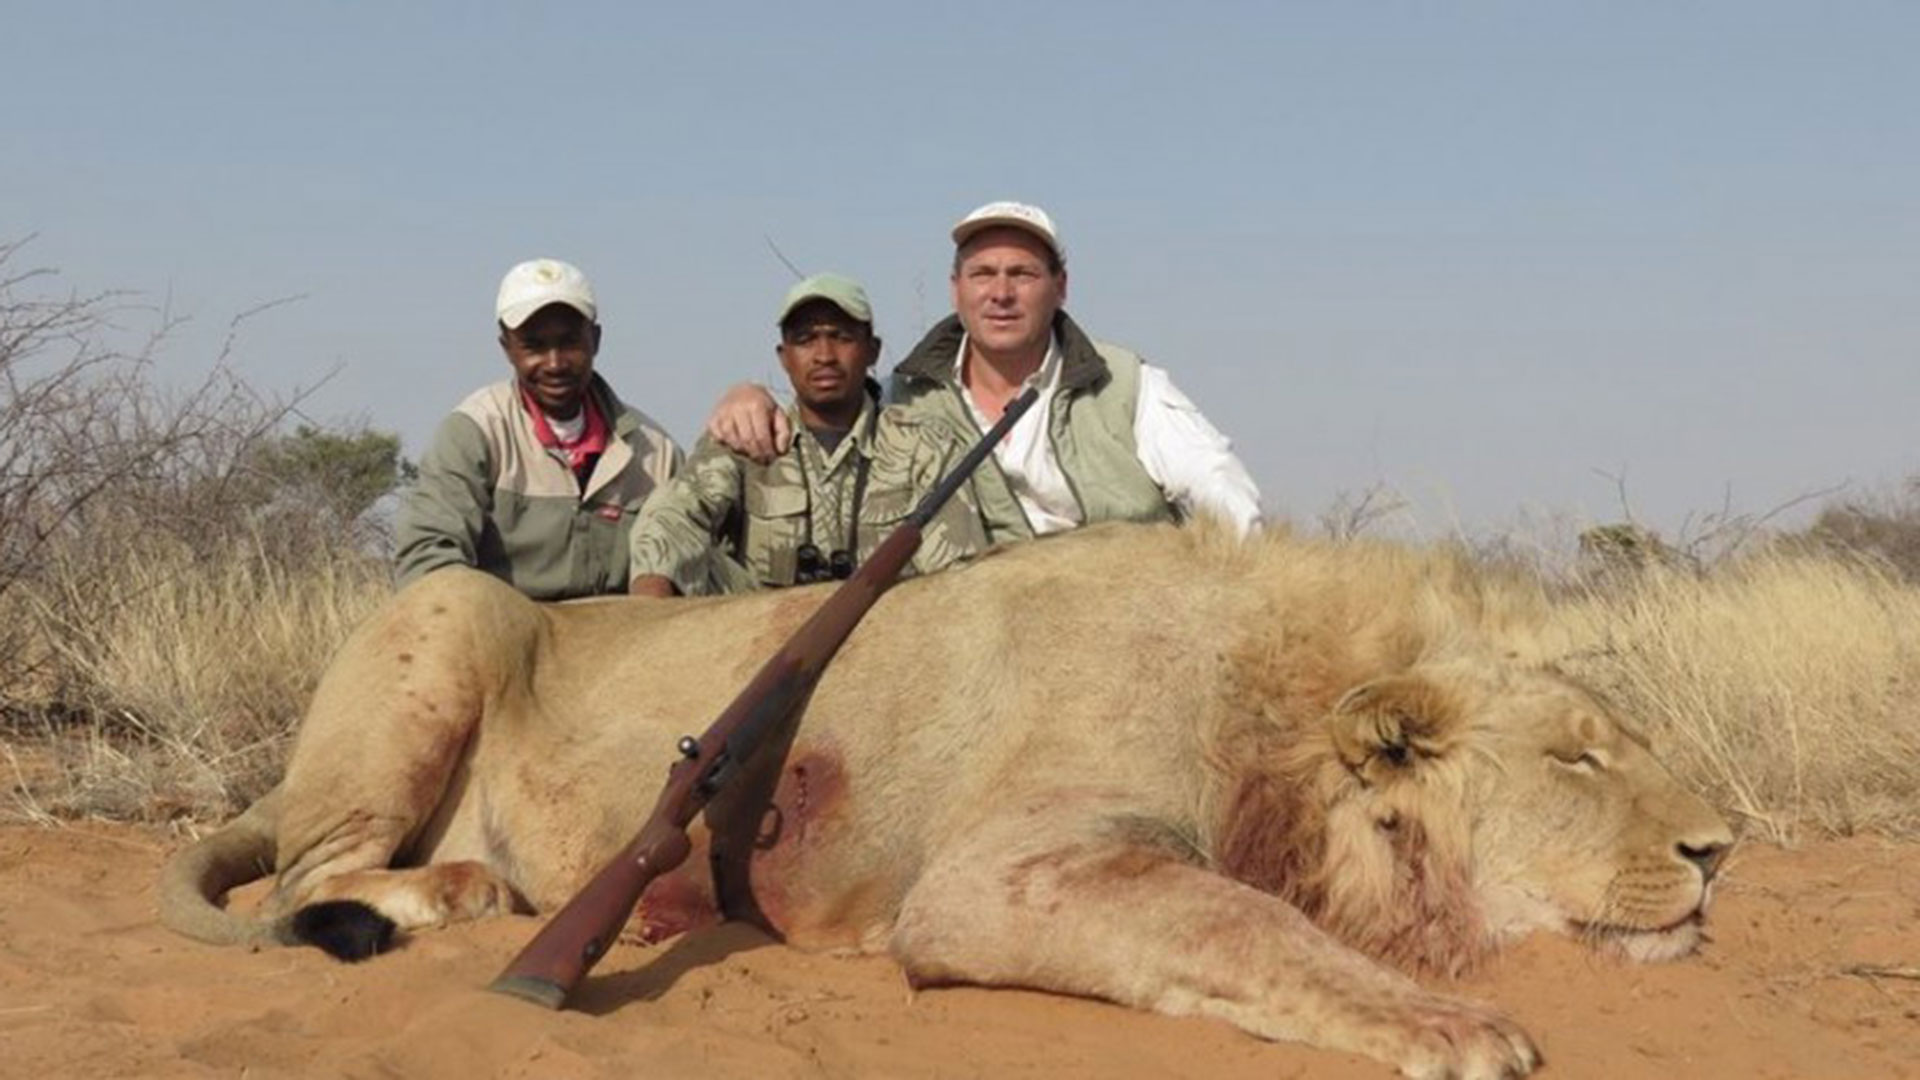 VIDEO) Millonarios practican “caza enlatada” de leones en Sudáfrica -  